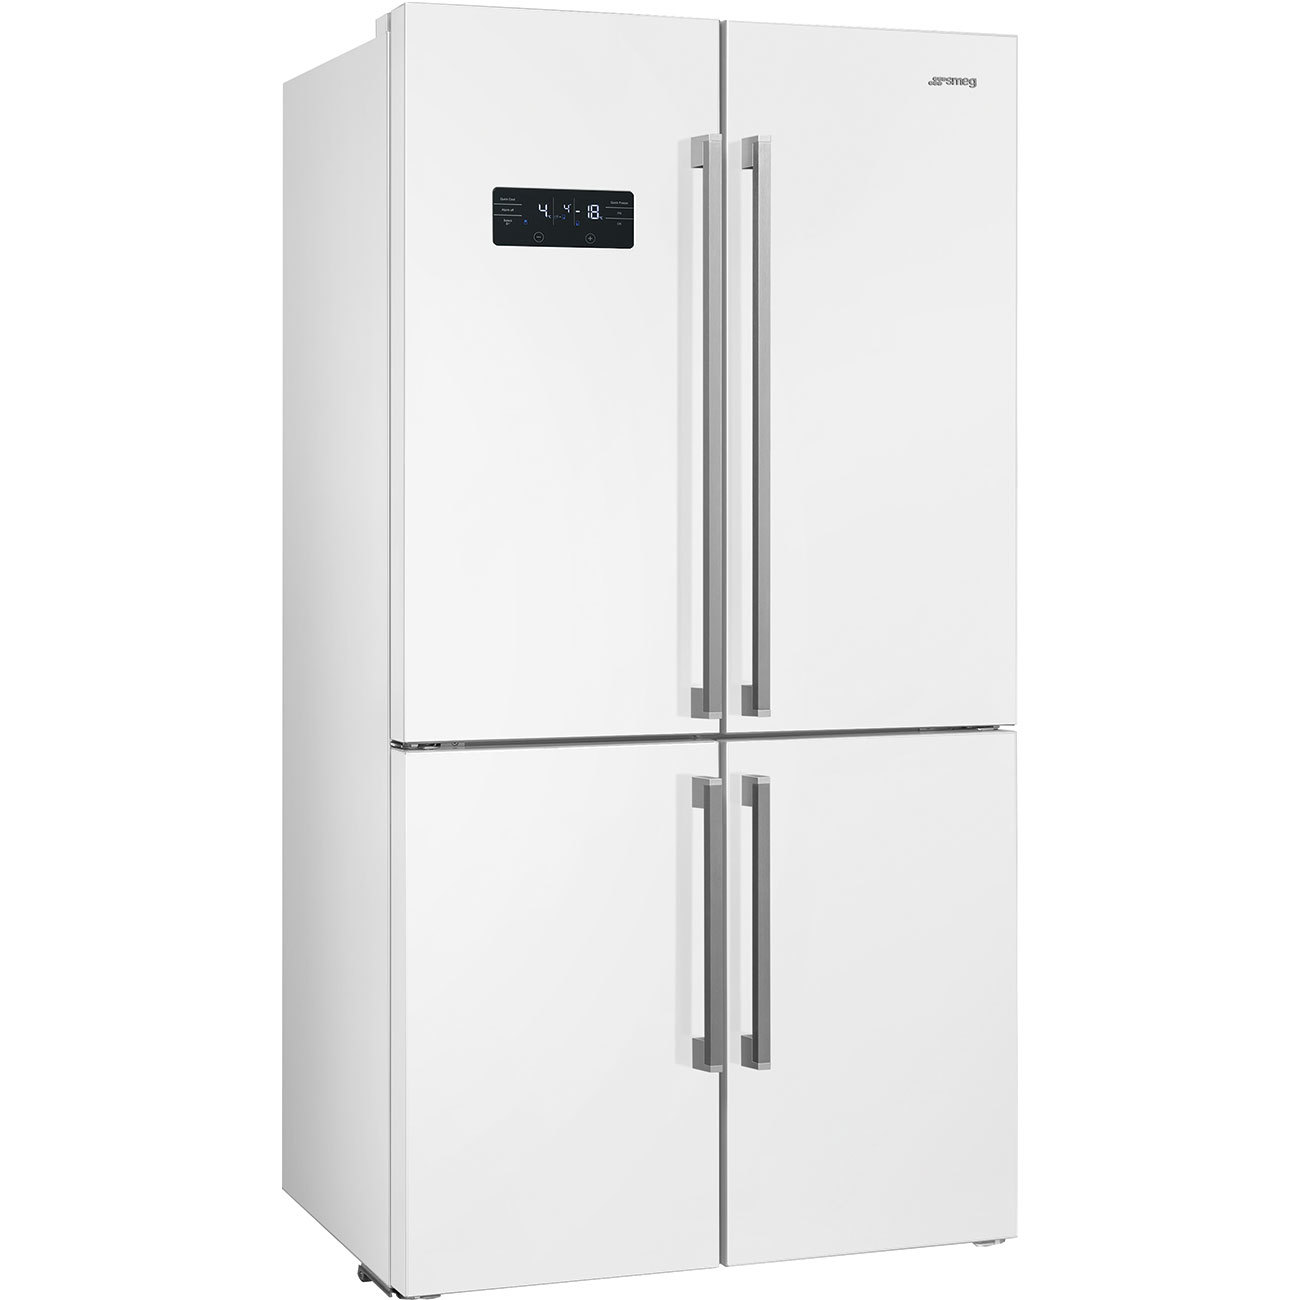 Купить холодильник с доставкой спб. Холодильник Smeg fq60bdf. Холодильник Smeg fq60bdf белый. Холодильник (Side-by-Side) Smeg fq60cpo. Холодильник Side-by-Side Смег.